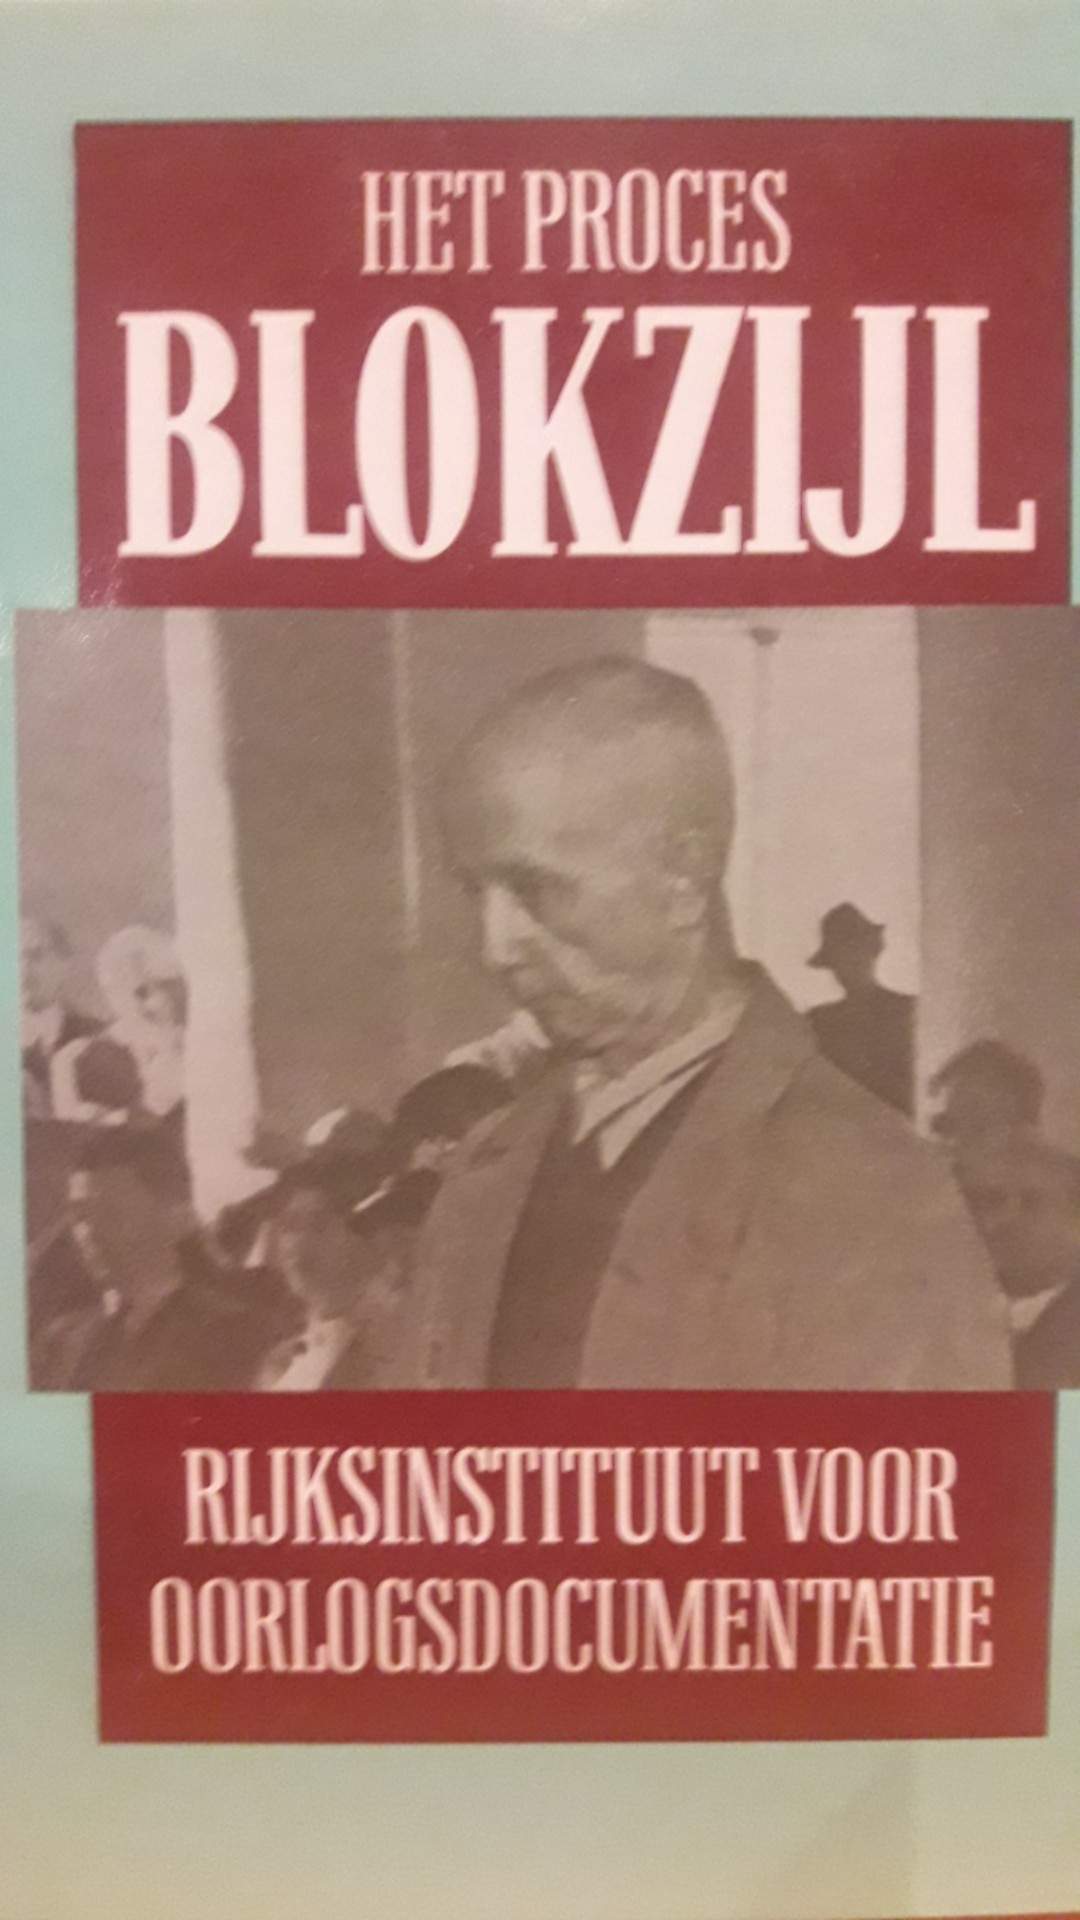 Het proces Max Blokzijl - Repressie in Nederland / 145 blz